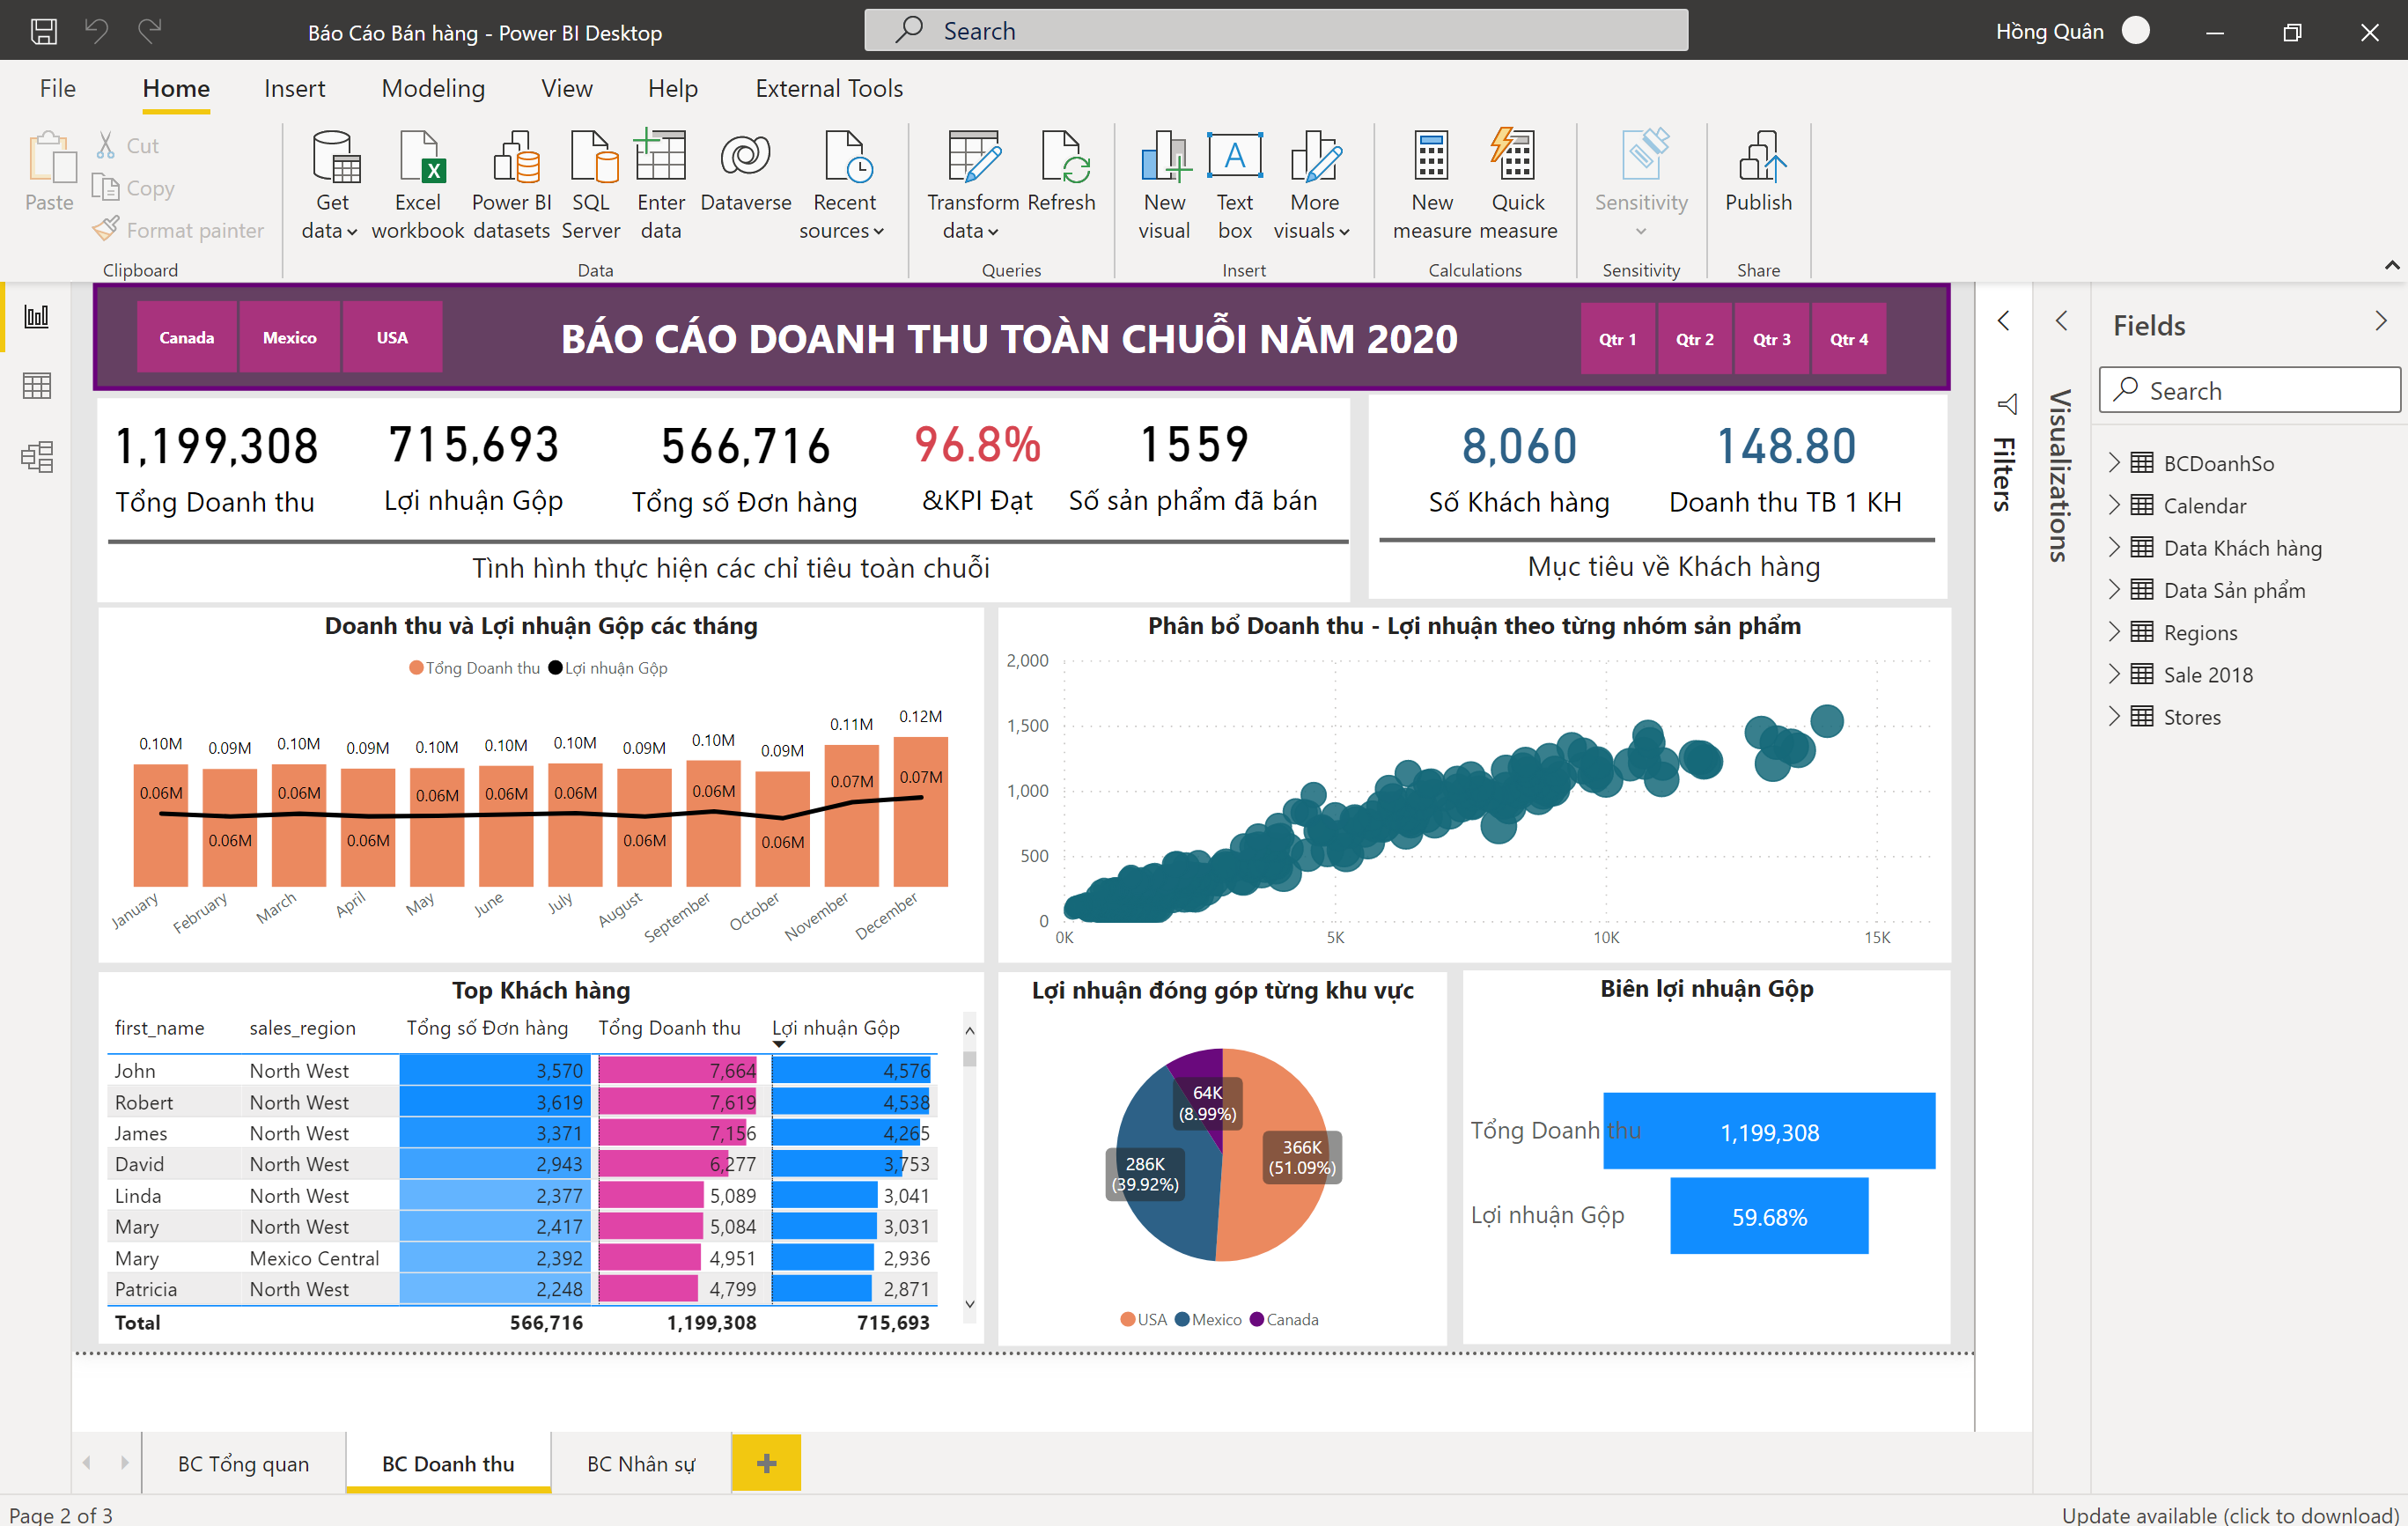 Hướng dẫn cách xây dựng Báo cáo, Dashboard trên phần mềm Power BI